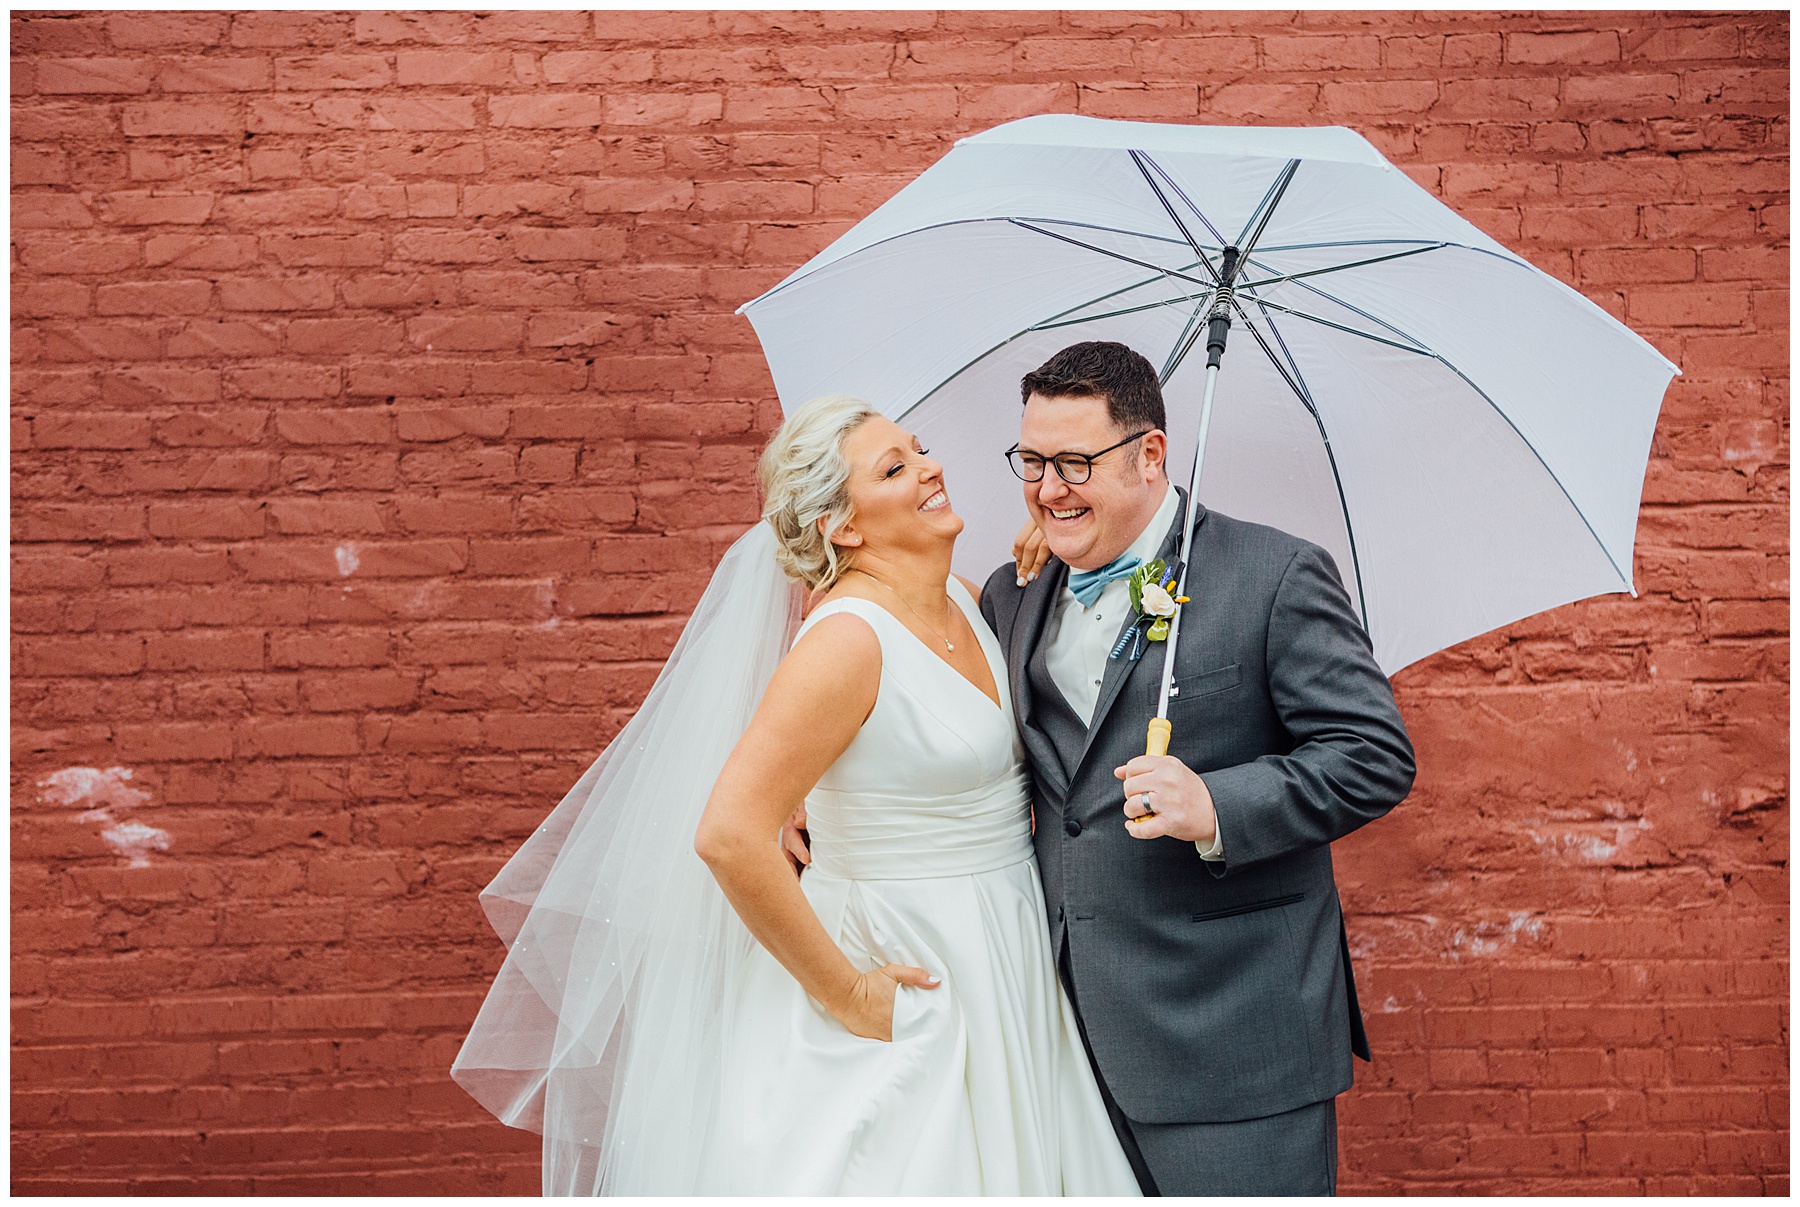 Beth & Bernie with an umbrella